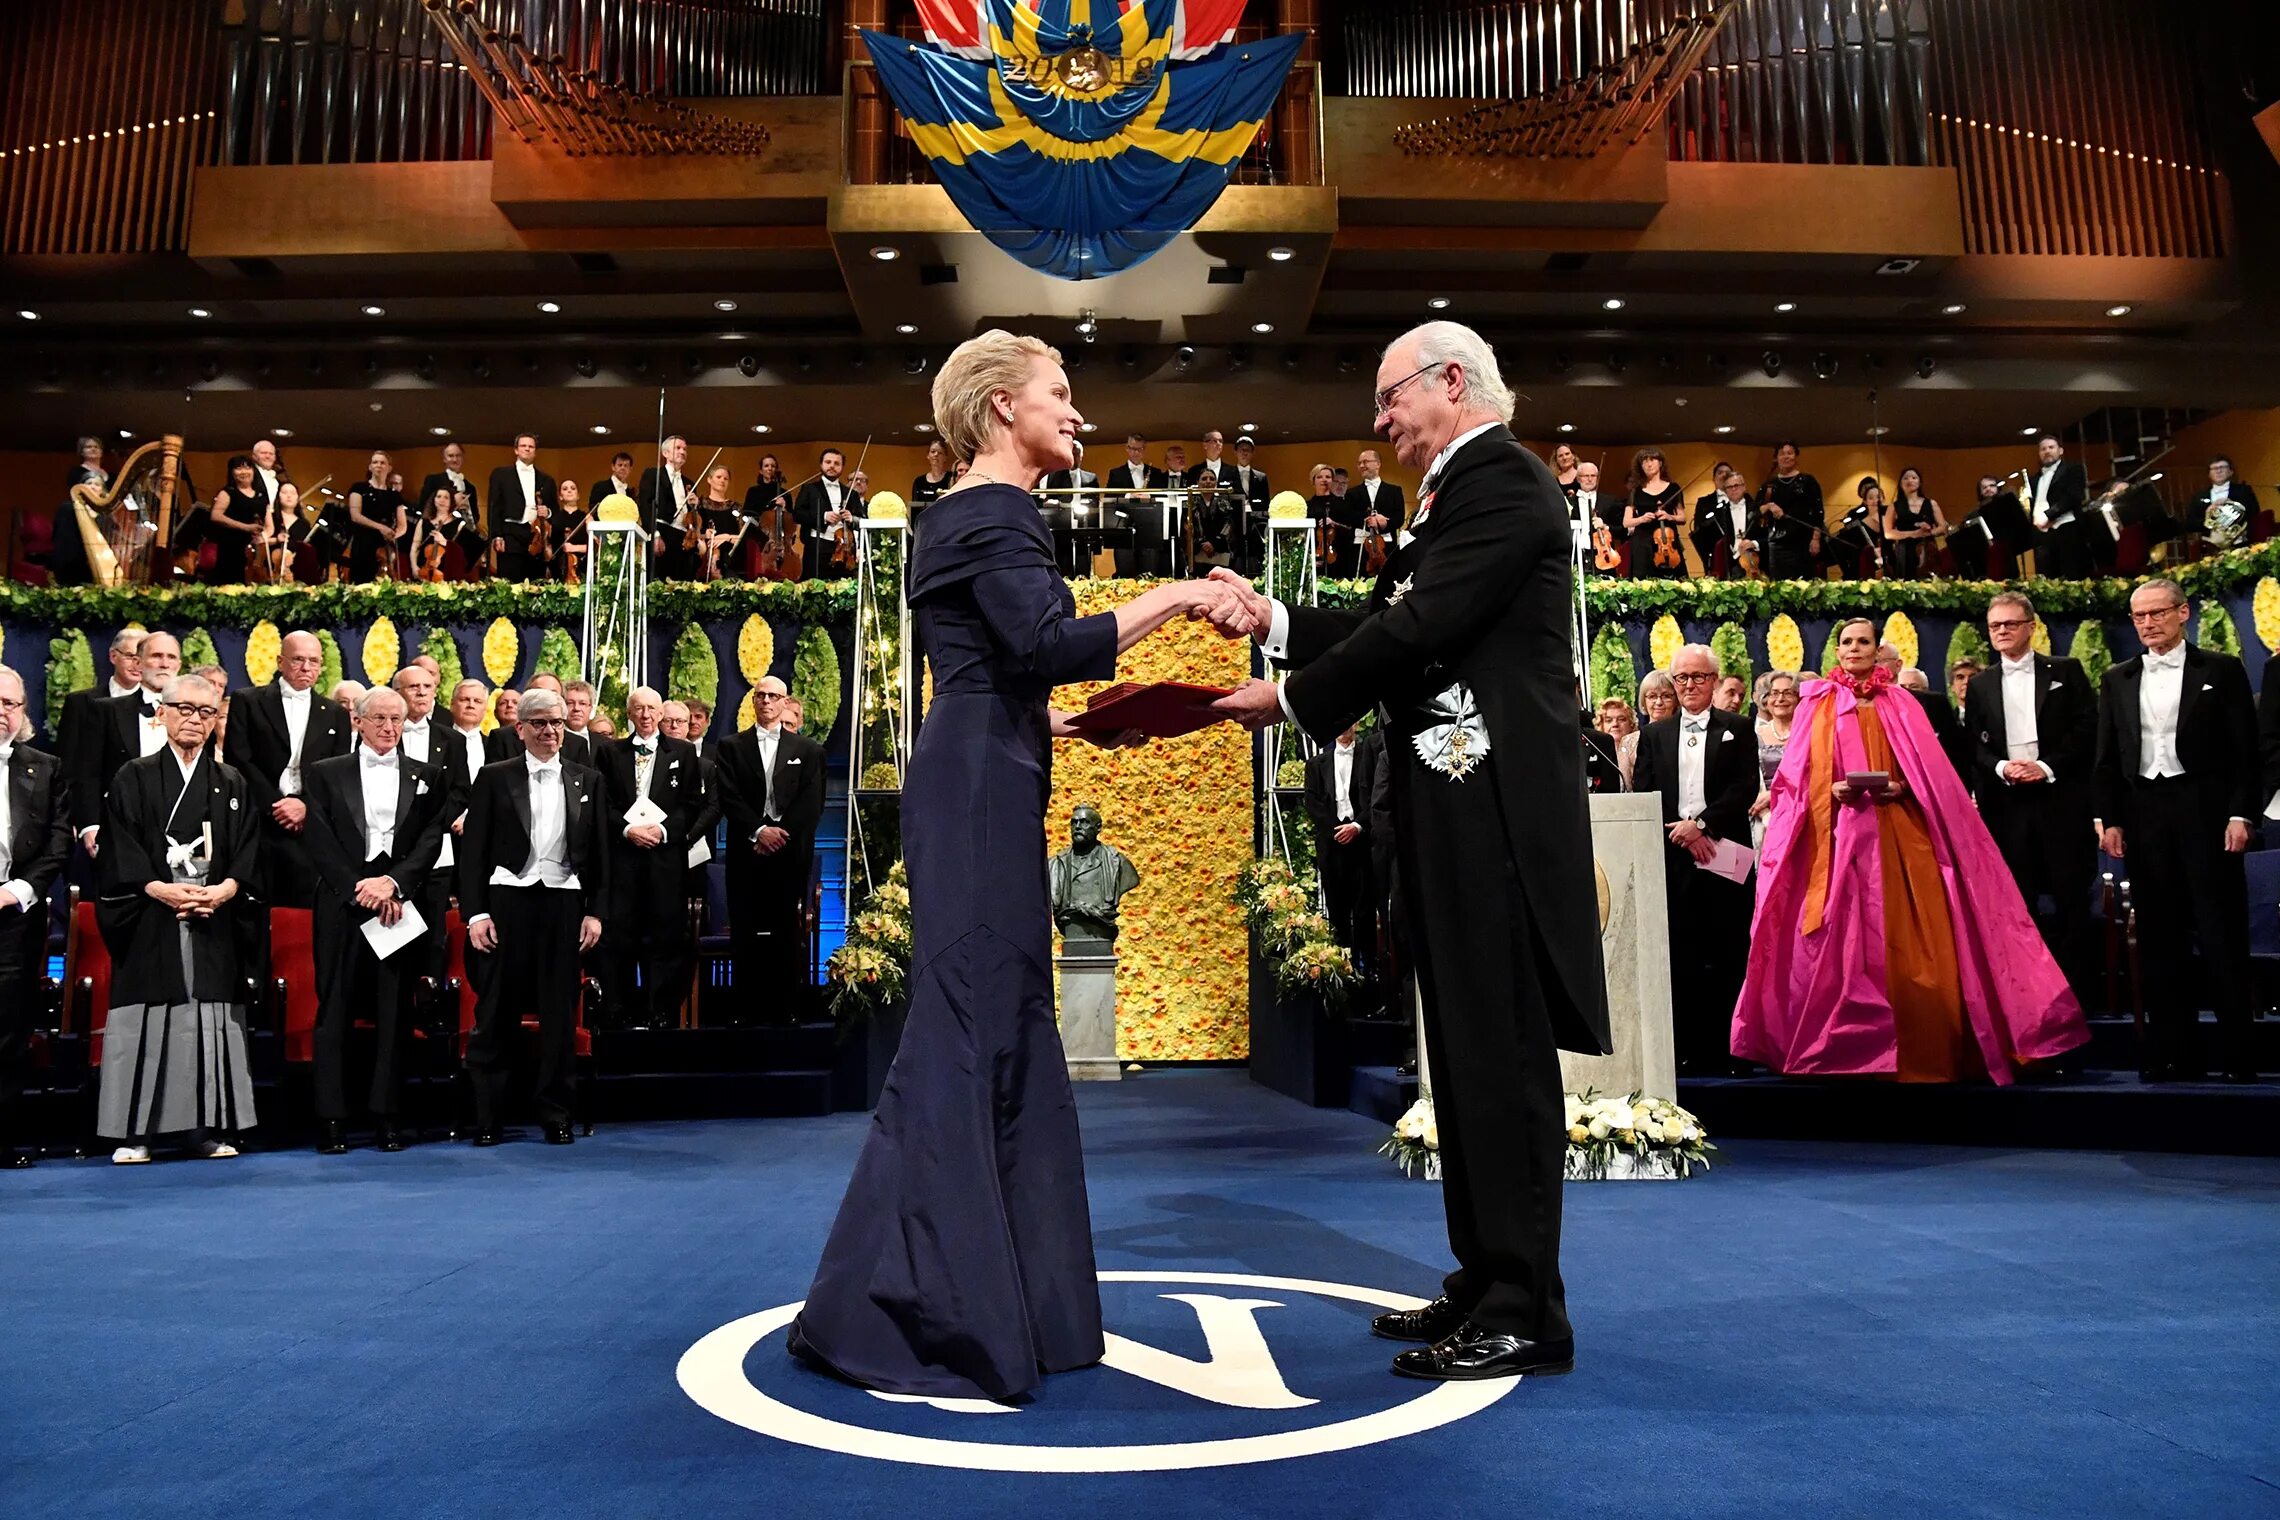 Нобелевская премия в Стокгольме. Церемония вручения Нобелевской премии в Стокгольме. Шведский Король Нобелевская премия. Видео церемонии награждения